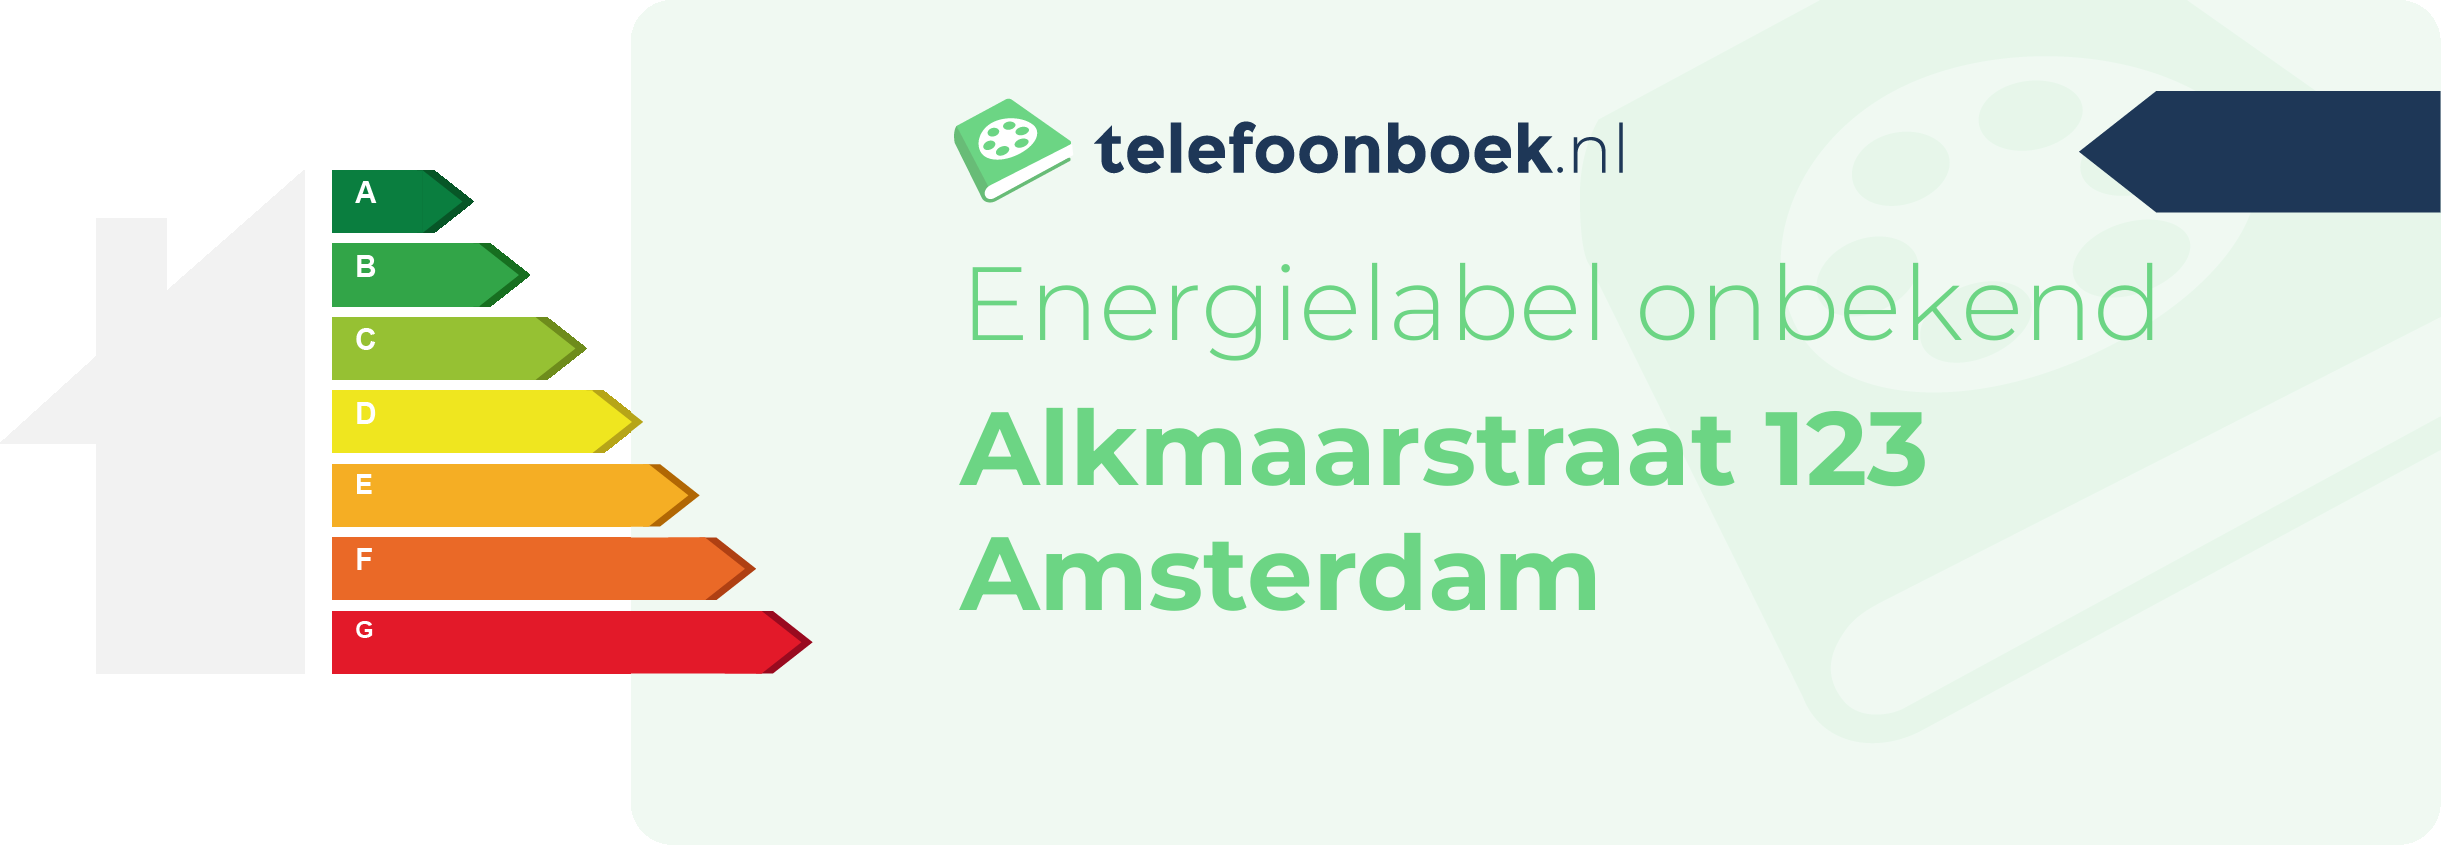 Energielabel Alkmaarstraat 123 Amsterdam